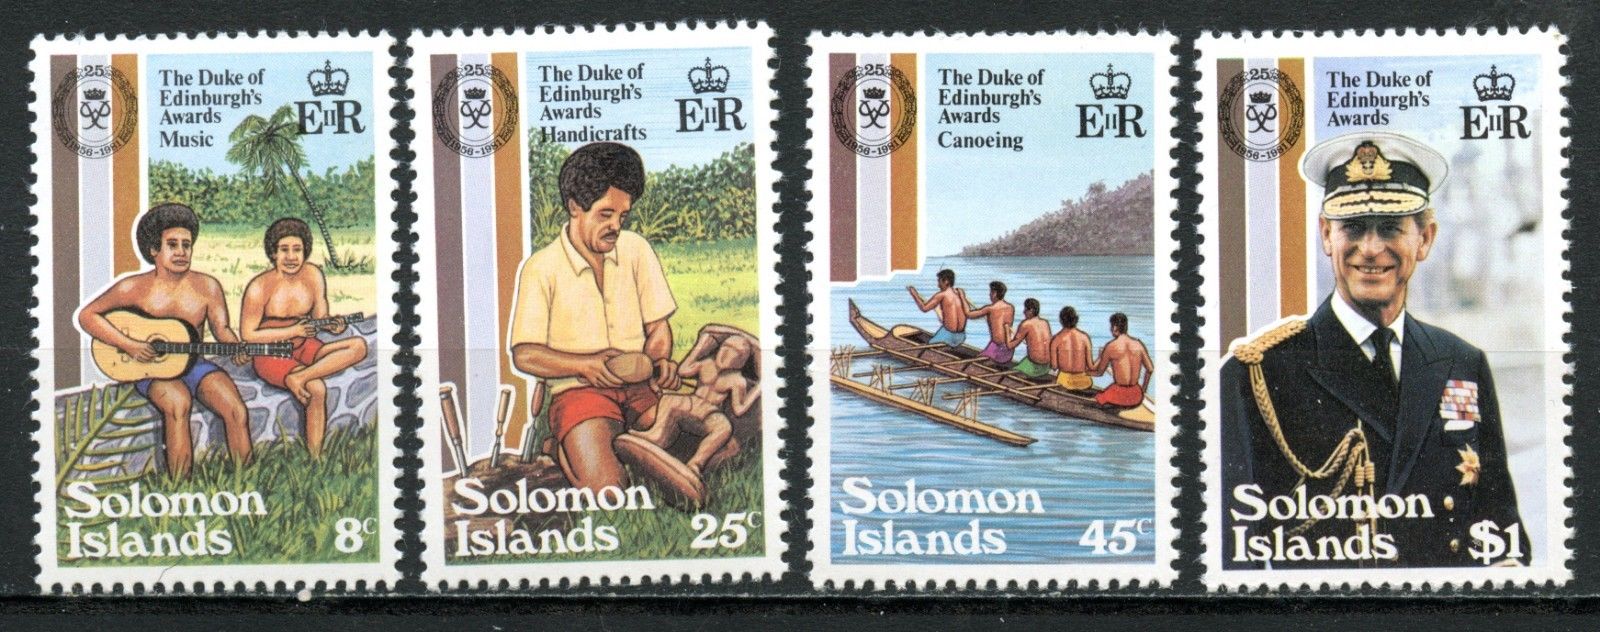 Solomon Islands 1981, Scott # 453 - 456, MNH, ntennial